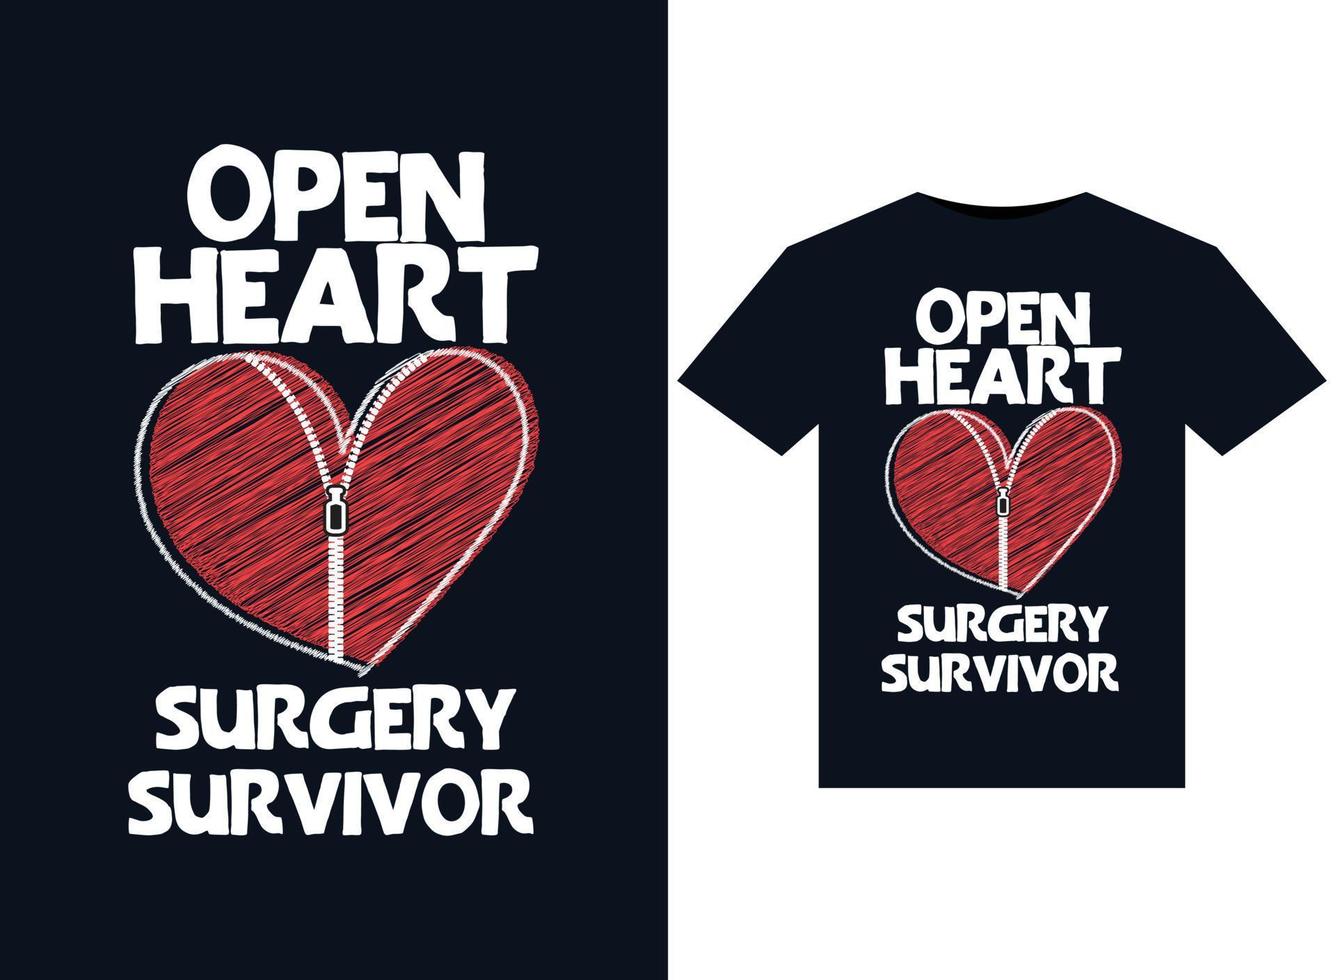 illustrations de survivants de chirurgie à cœur ouvert pour la conception de t-shirts prêts à imprimer vecteur